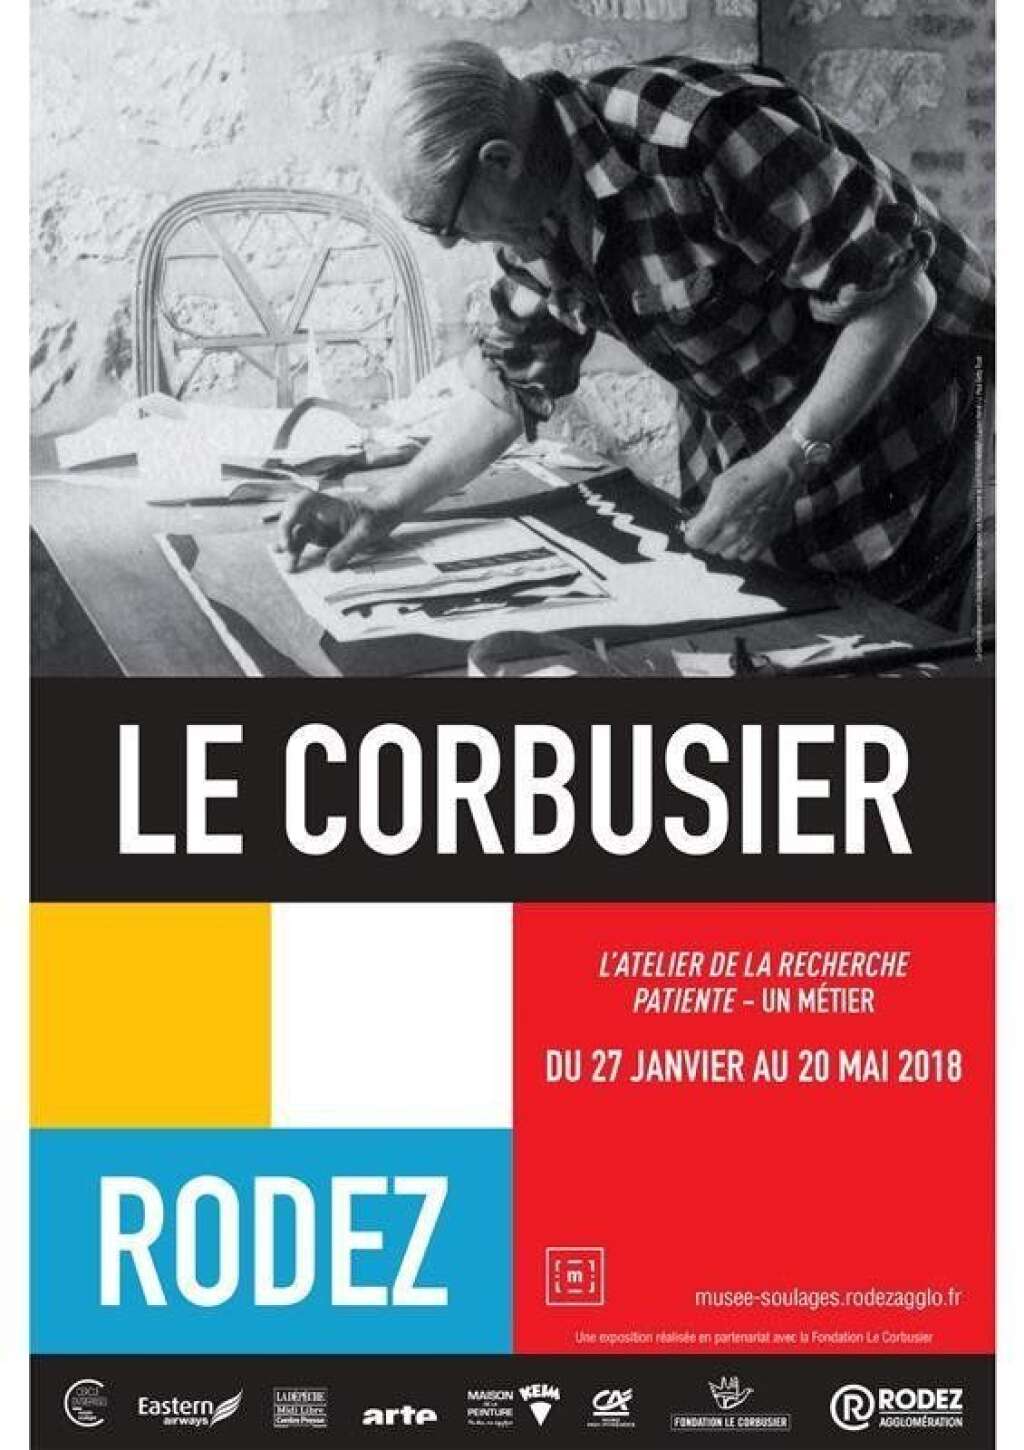 Le Corbusier - <p><em>Du 27 janvier au 20 mai 2018 au musée Soulages de Rodez</em></p>  <p>Le musée Soulages met à l’honneur une des grandes figures de l’architecture et de l’urbanisme du vingtième siècle: Le Corbusier. Présentée en collaboration avec la Fondation Le Corbusier à Paris, cette exposition est une création spécifique pour Rodez, qui s’articule autour de l’ouvrage testamentaire éponyme du designer.</p>  <p>Une sélection de <strong>peintures, sculptures, photographies, maquettes, tapisseries</strong> et <strong>dessins permettra de</strong> comprendre le fameux concept qu'il aimait appeler "<strong>synthèse des arts</strong>".</p>  <p></p>